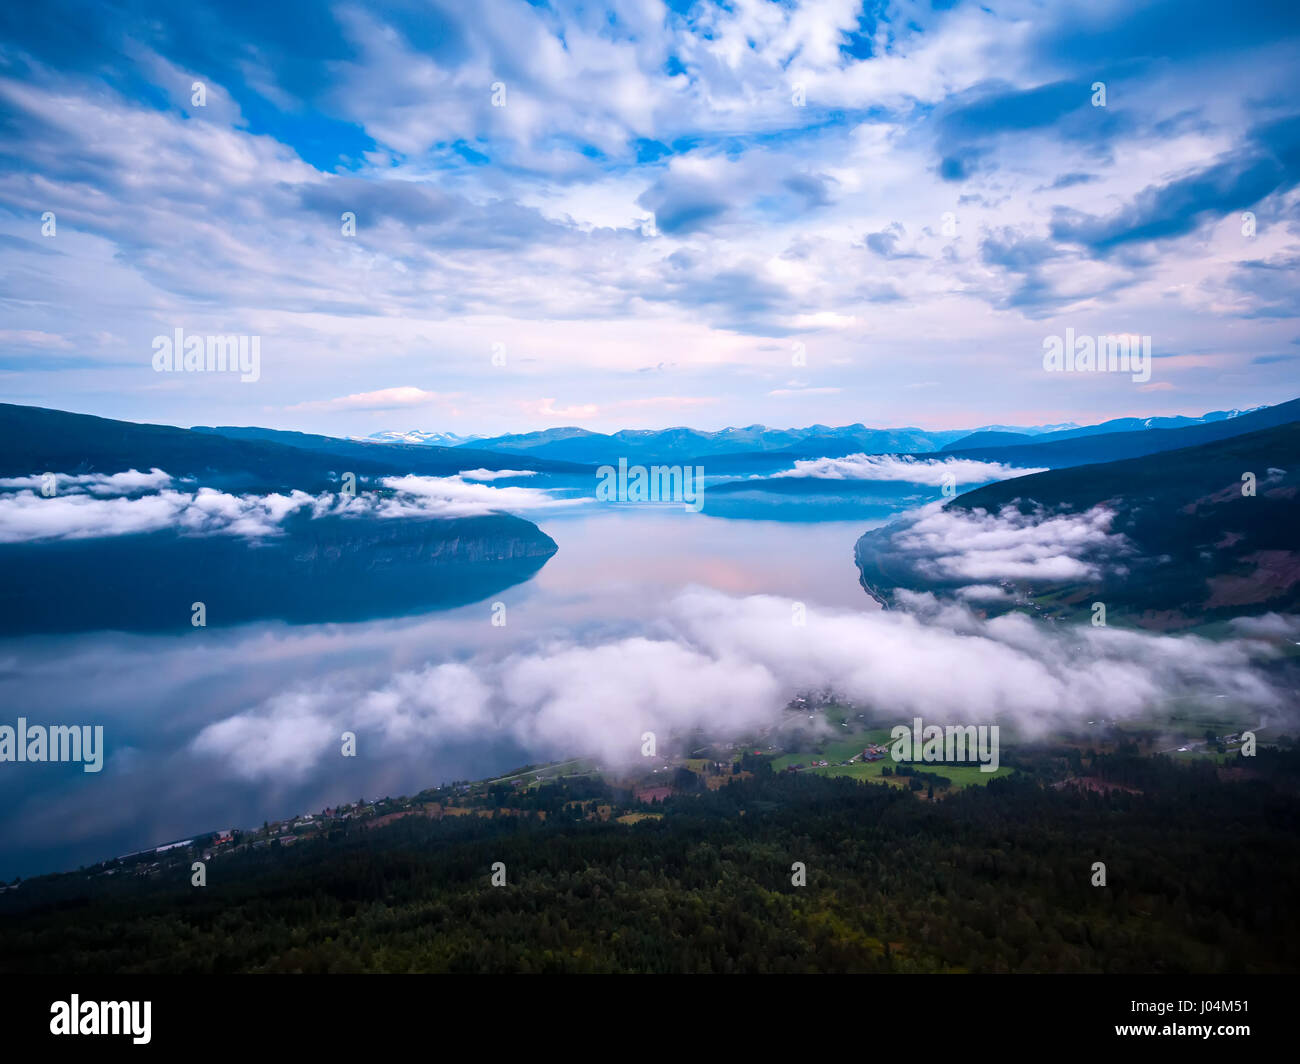 La bellissima natura della Norvegia paesaggio naturale la fotografia aerea. Foto Stock